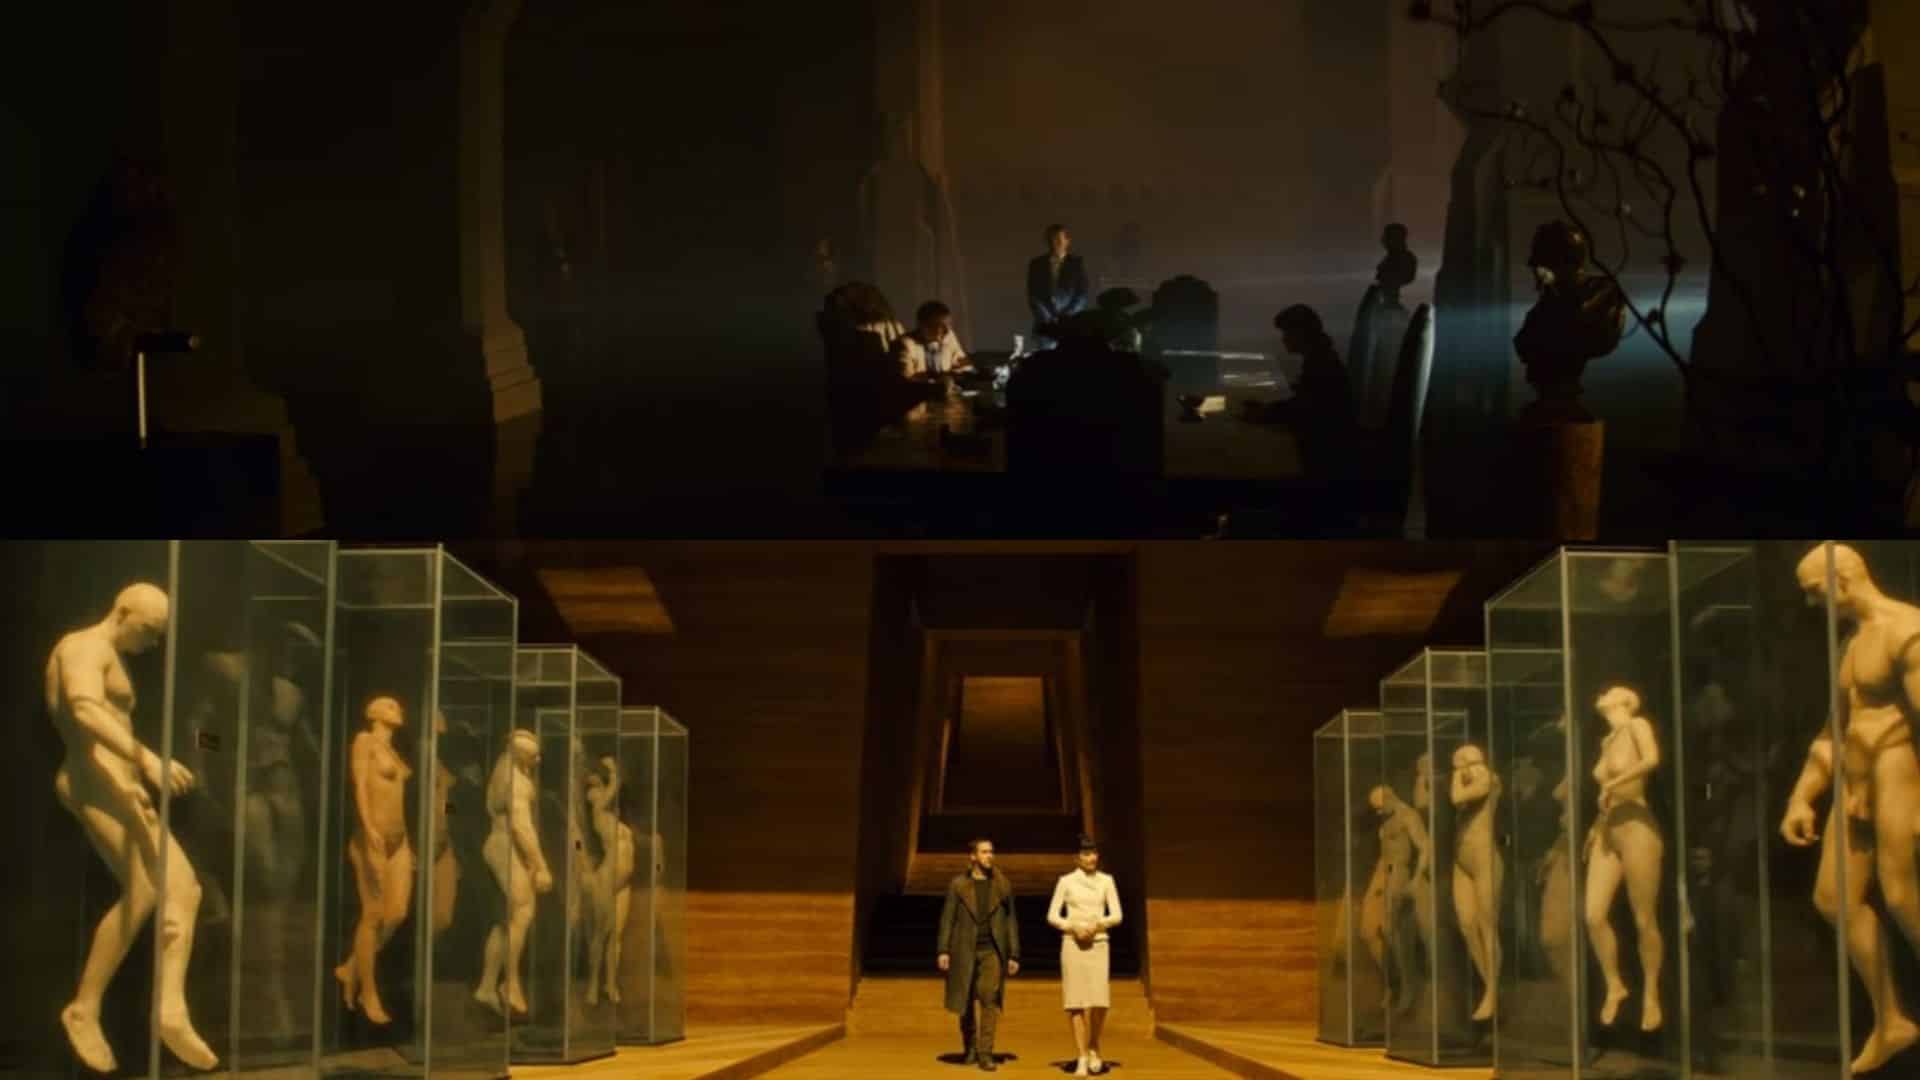 Blade Runner, Blade Runner 2049, Cinematographe.it